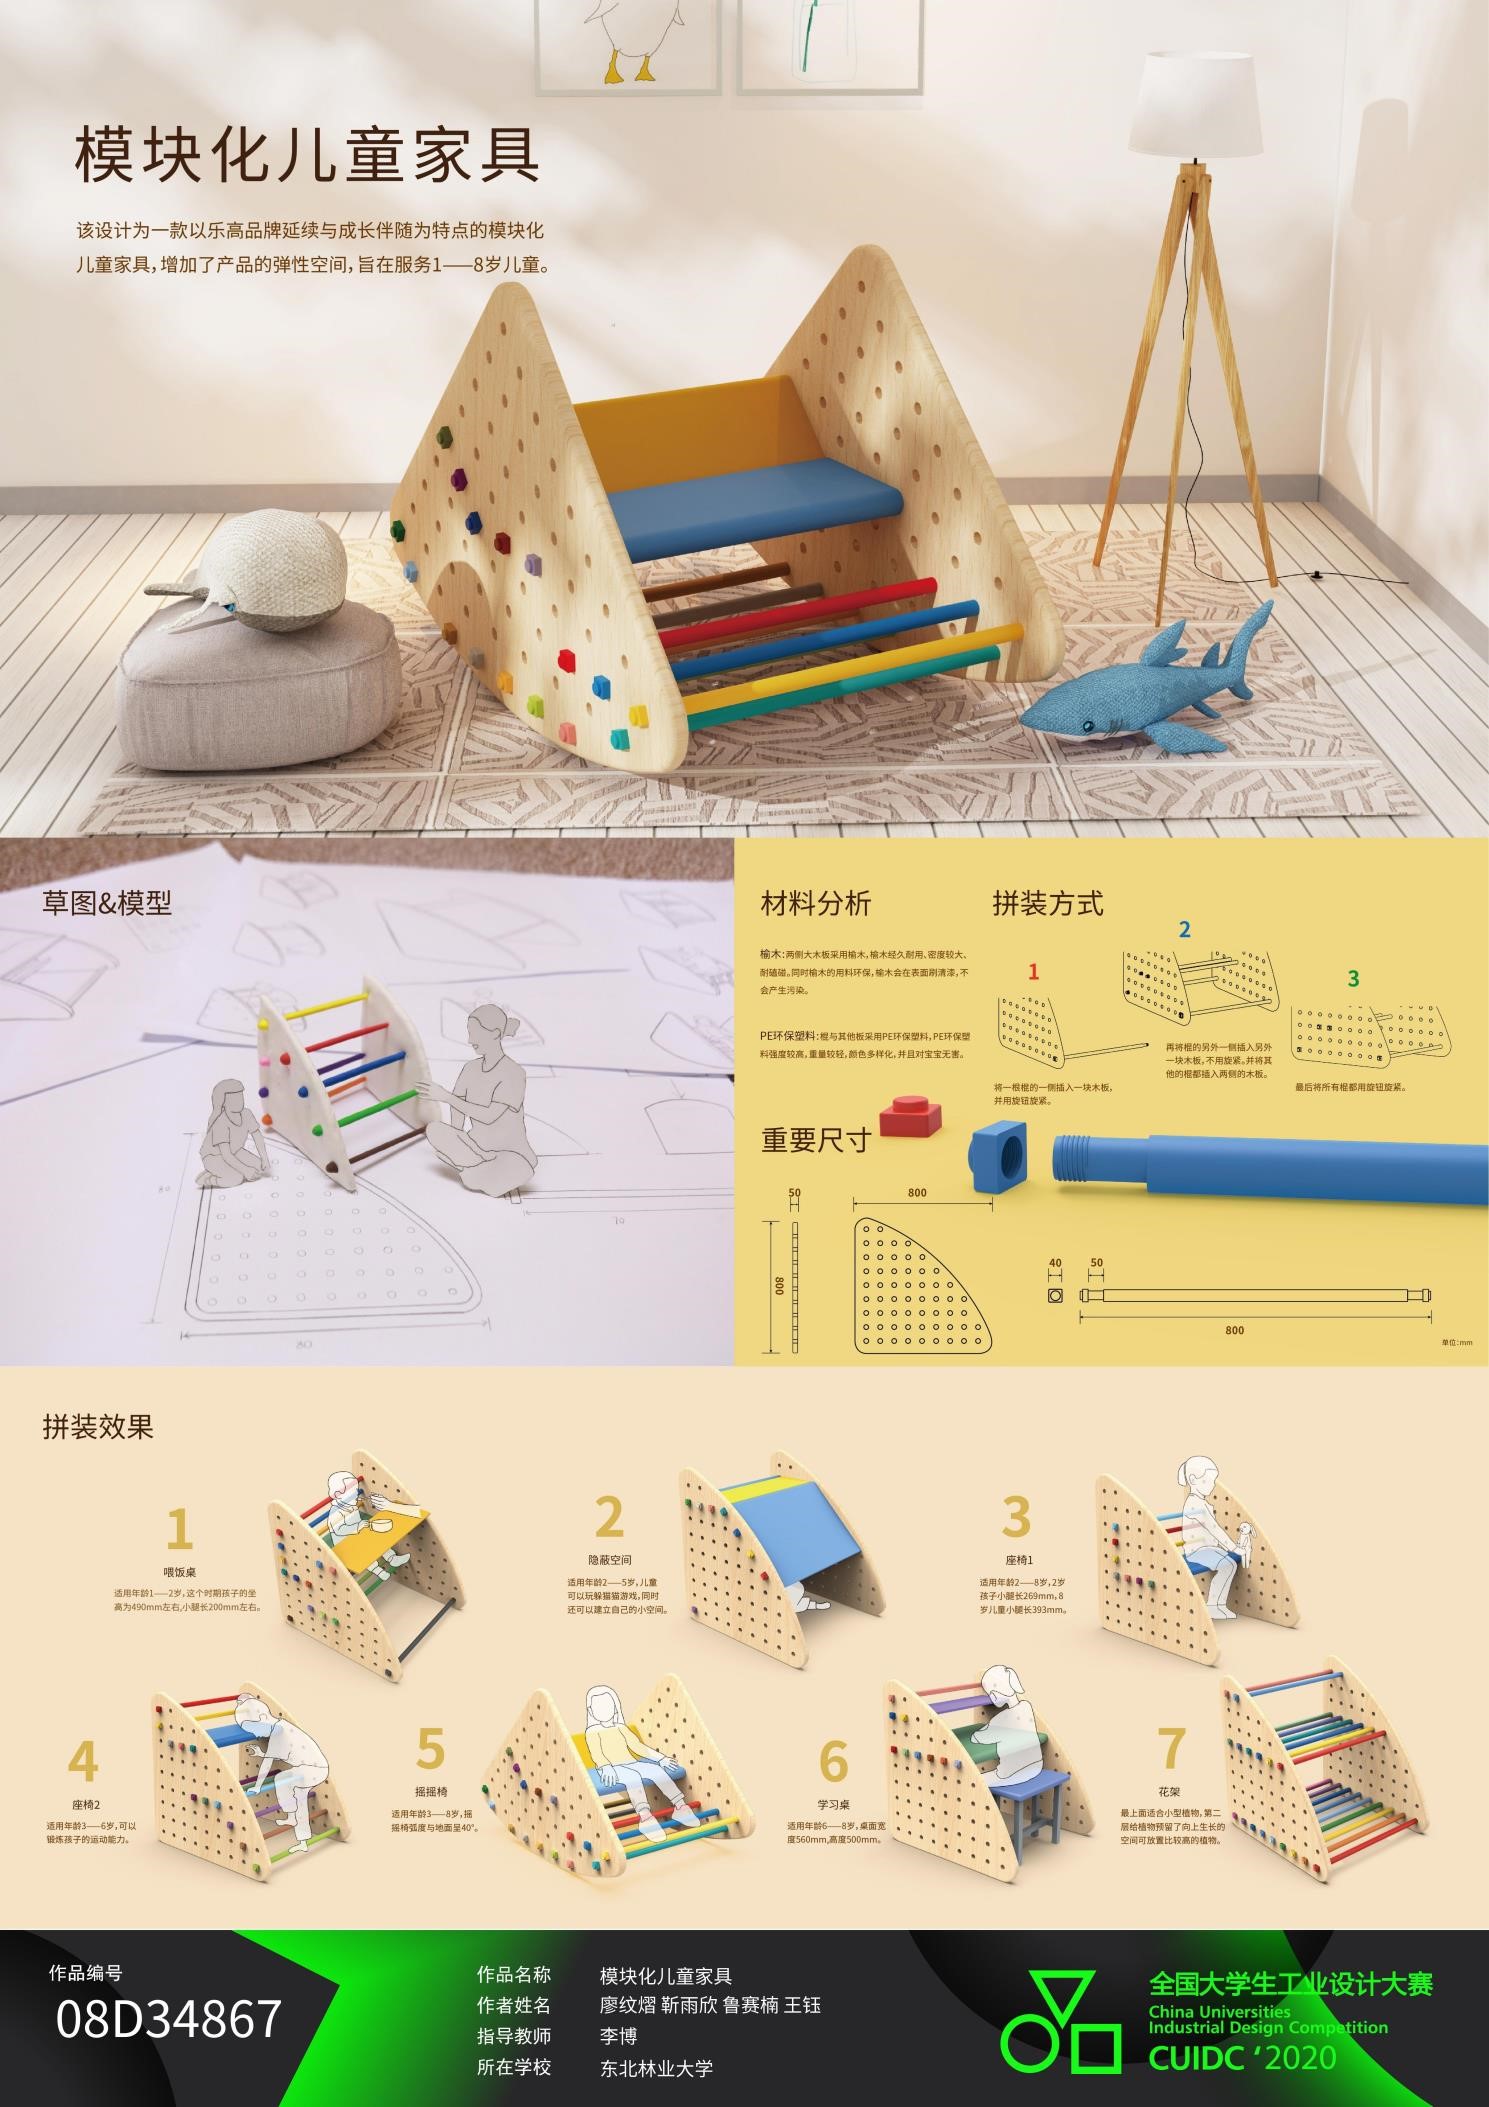 刘九庆 模块化移动售货车设计 王诗雨等 2017 战丽 模块化儿童家具